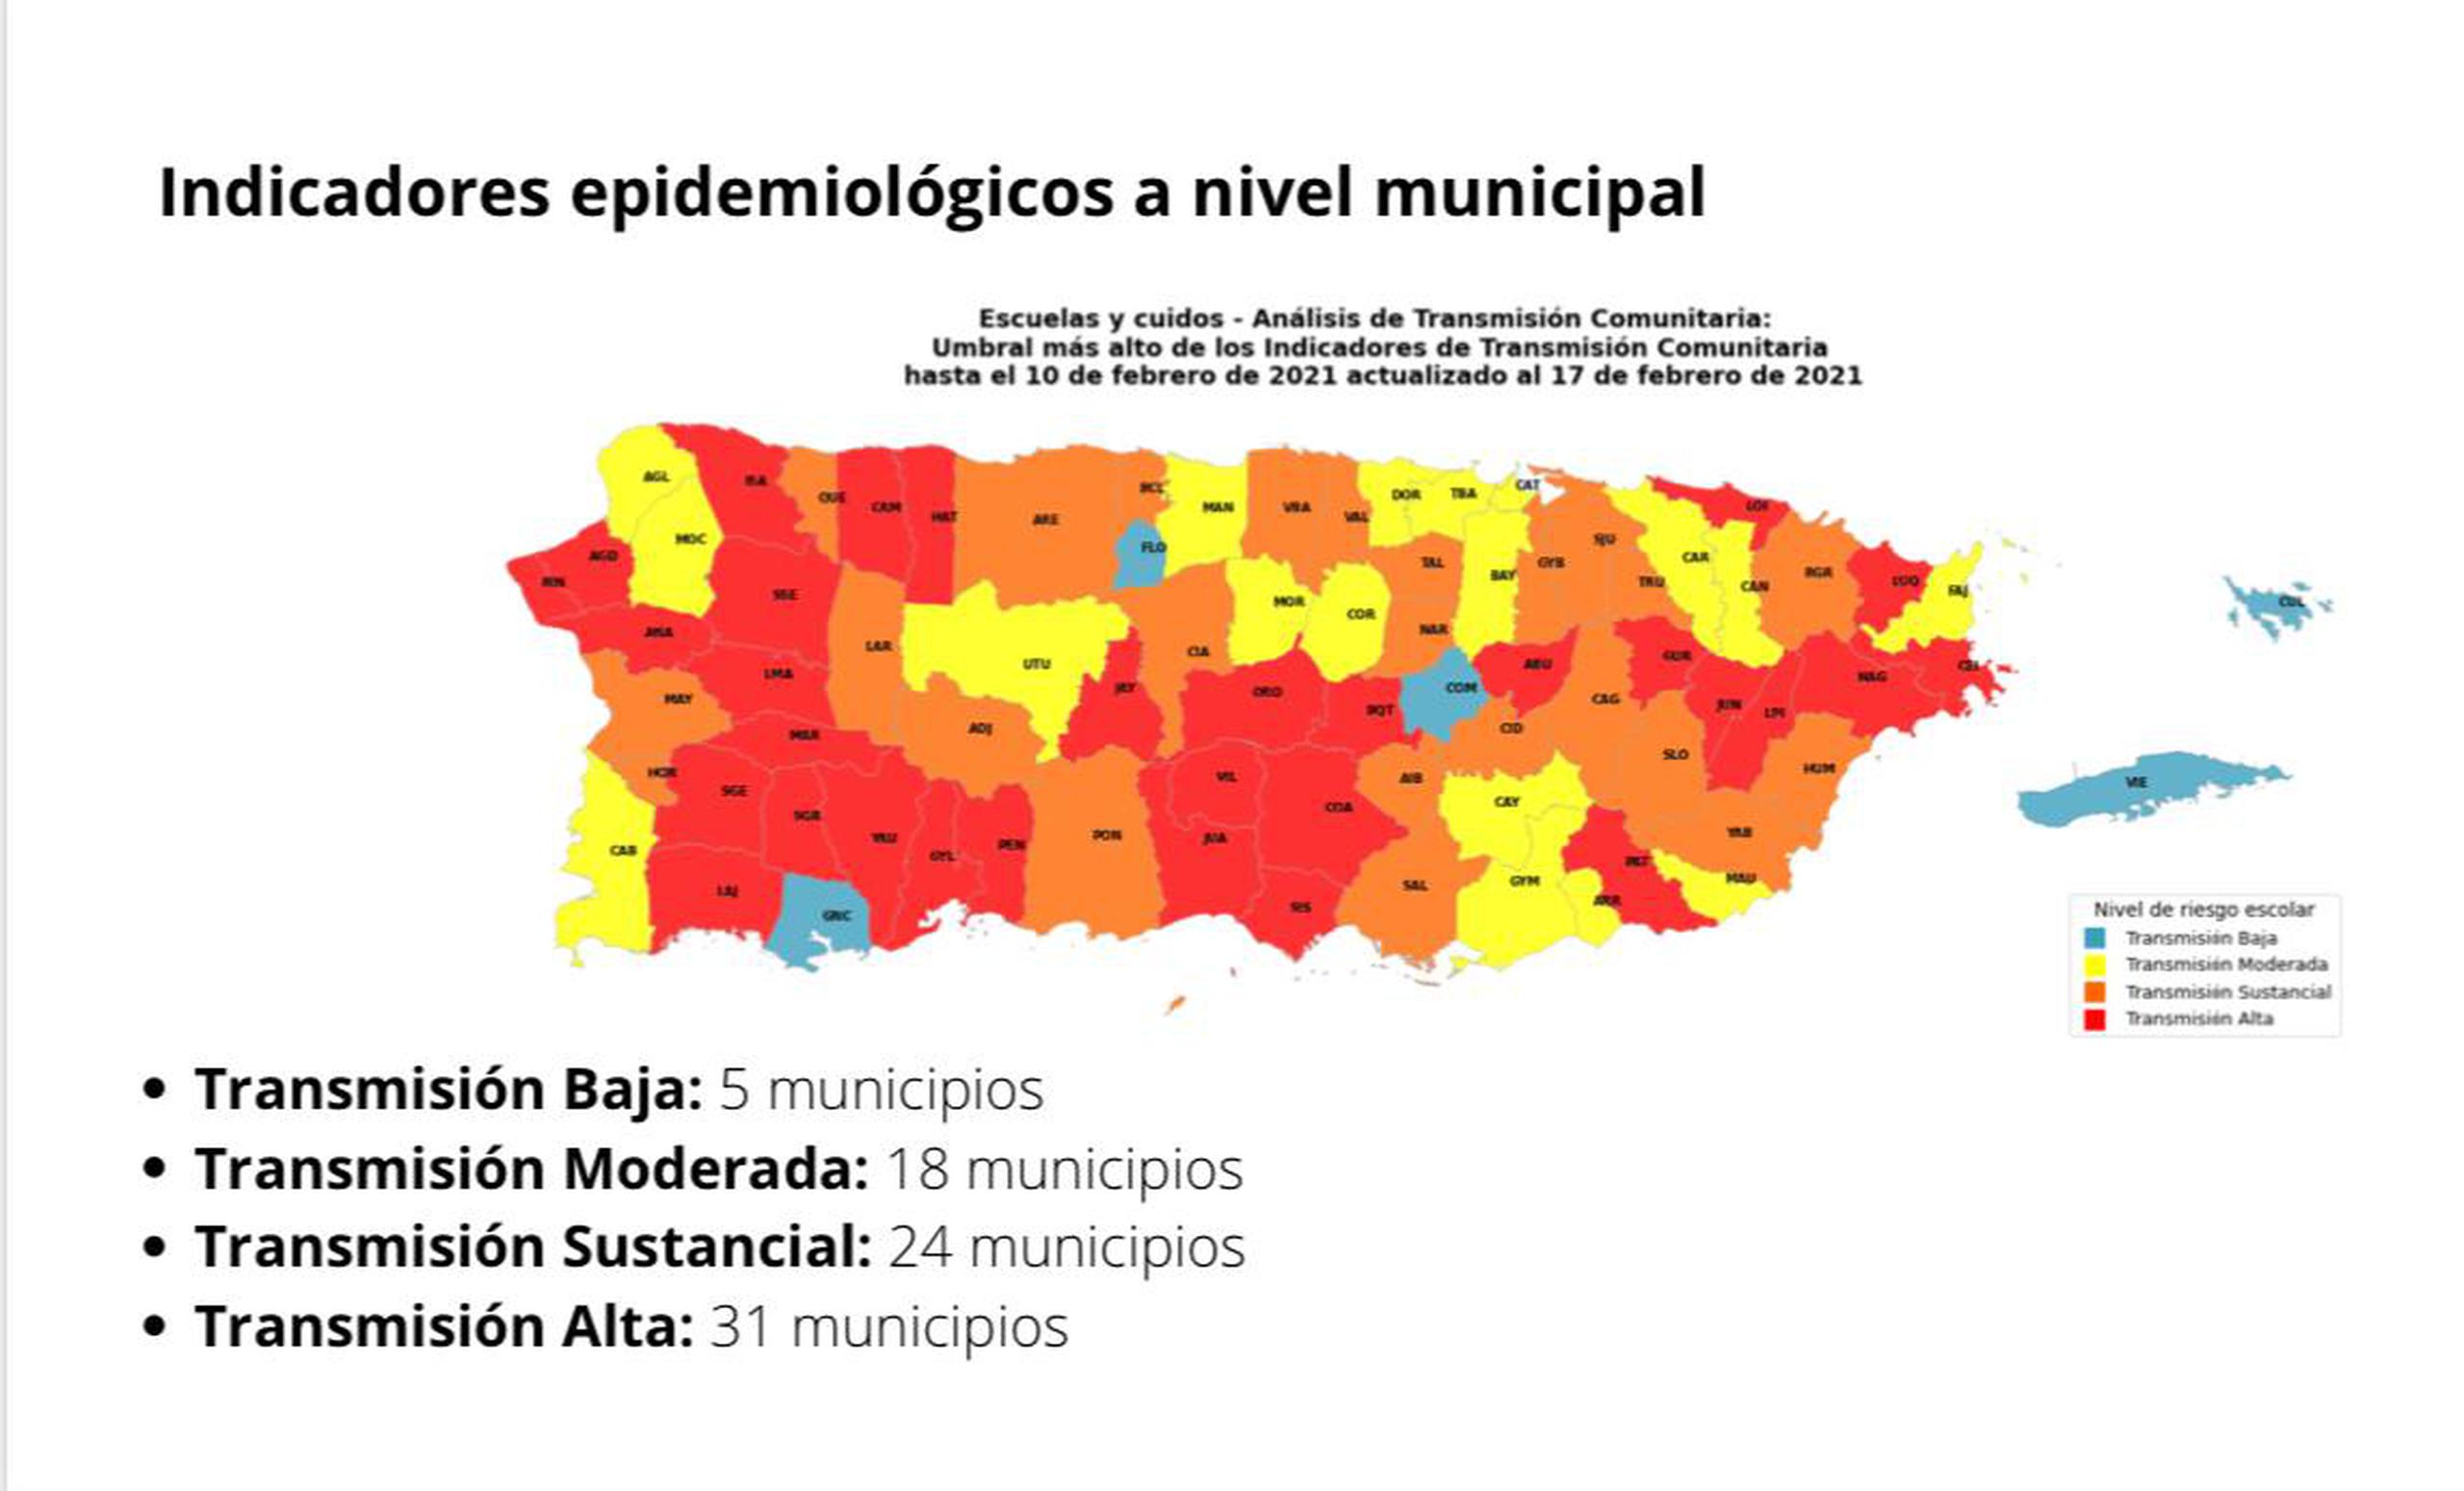 Mapa suministrado la semana pasada que identificaba en rojo los pueblos en niveles críticos de contagio por coronavirus. 